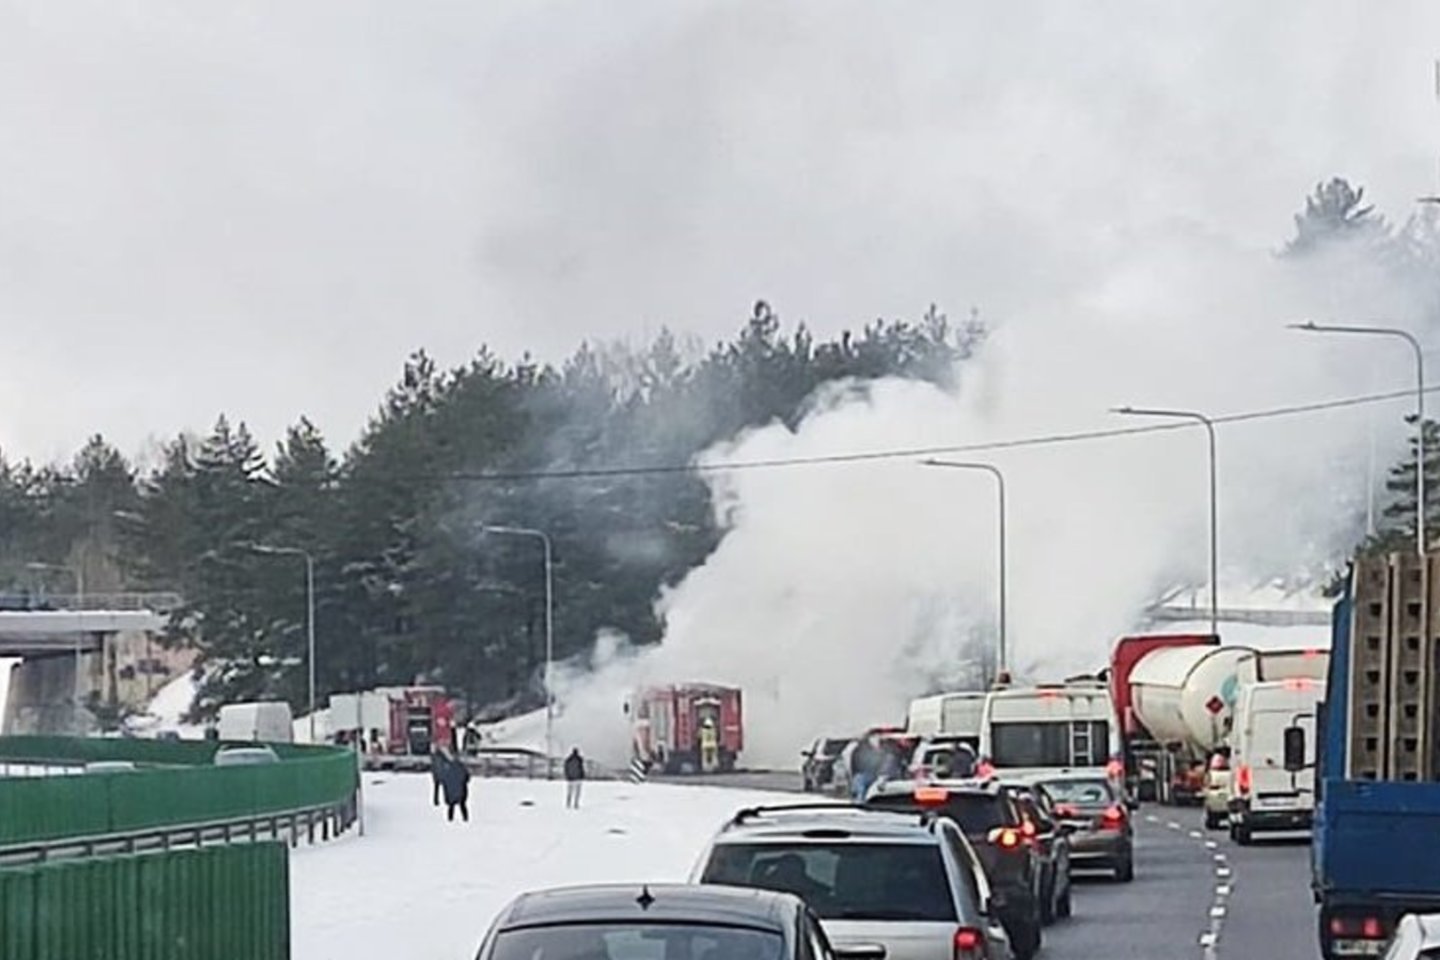  Vilniuje degė automobilis.<br> Įvykio liudininko nuotr.